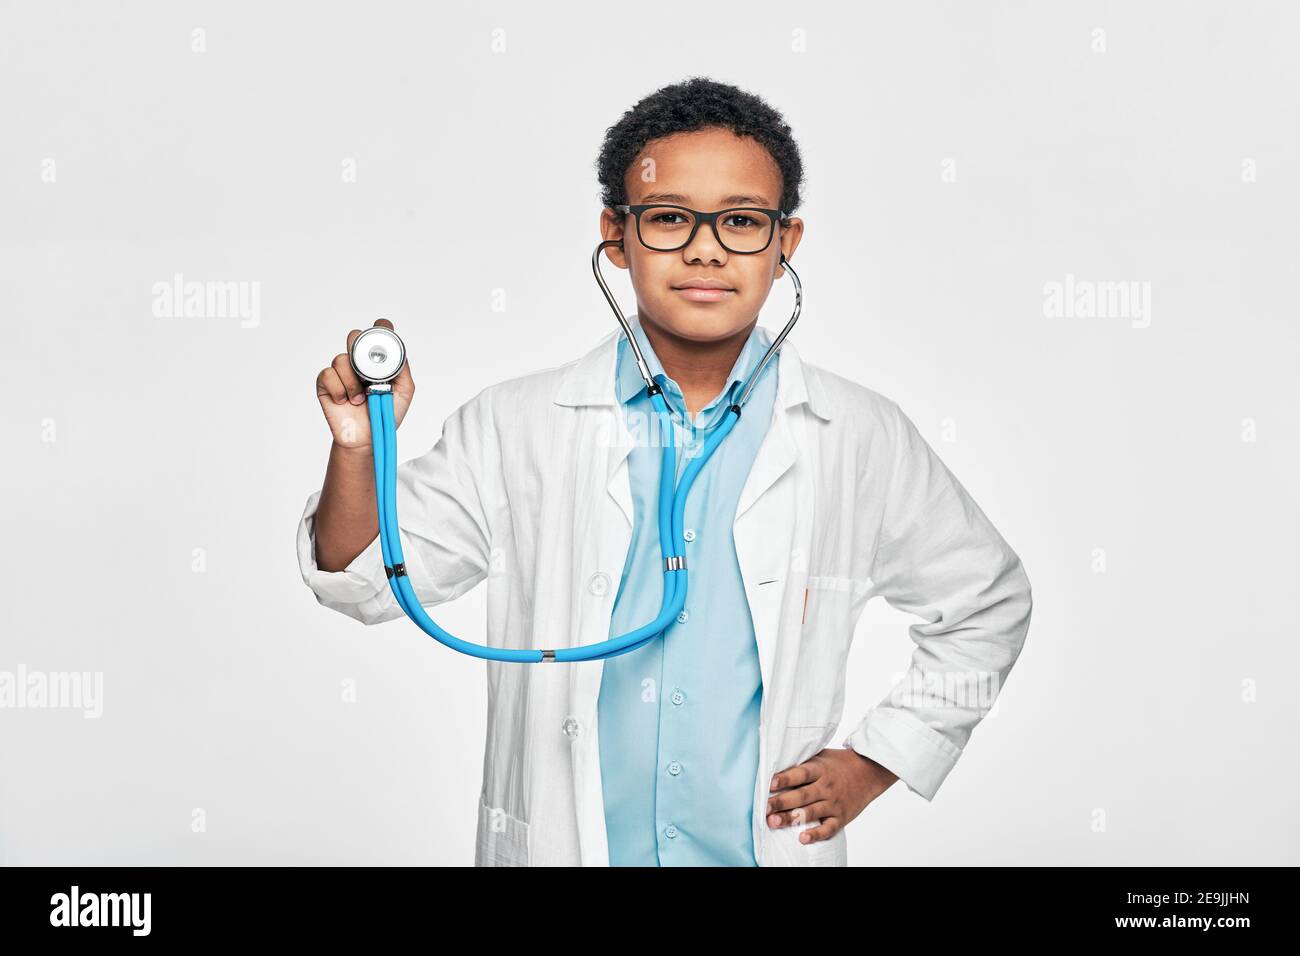 Porträt eines afroamerikanischen männlichen Kindes in einem Arztmantel mit Phonendoskop, auf hellgrauem Hintergrund stehend Stockfoto